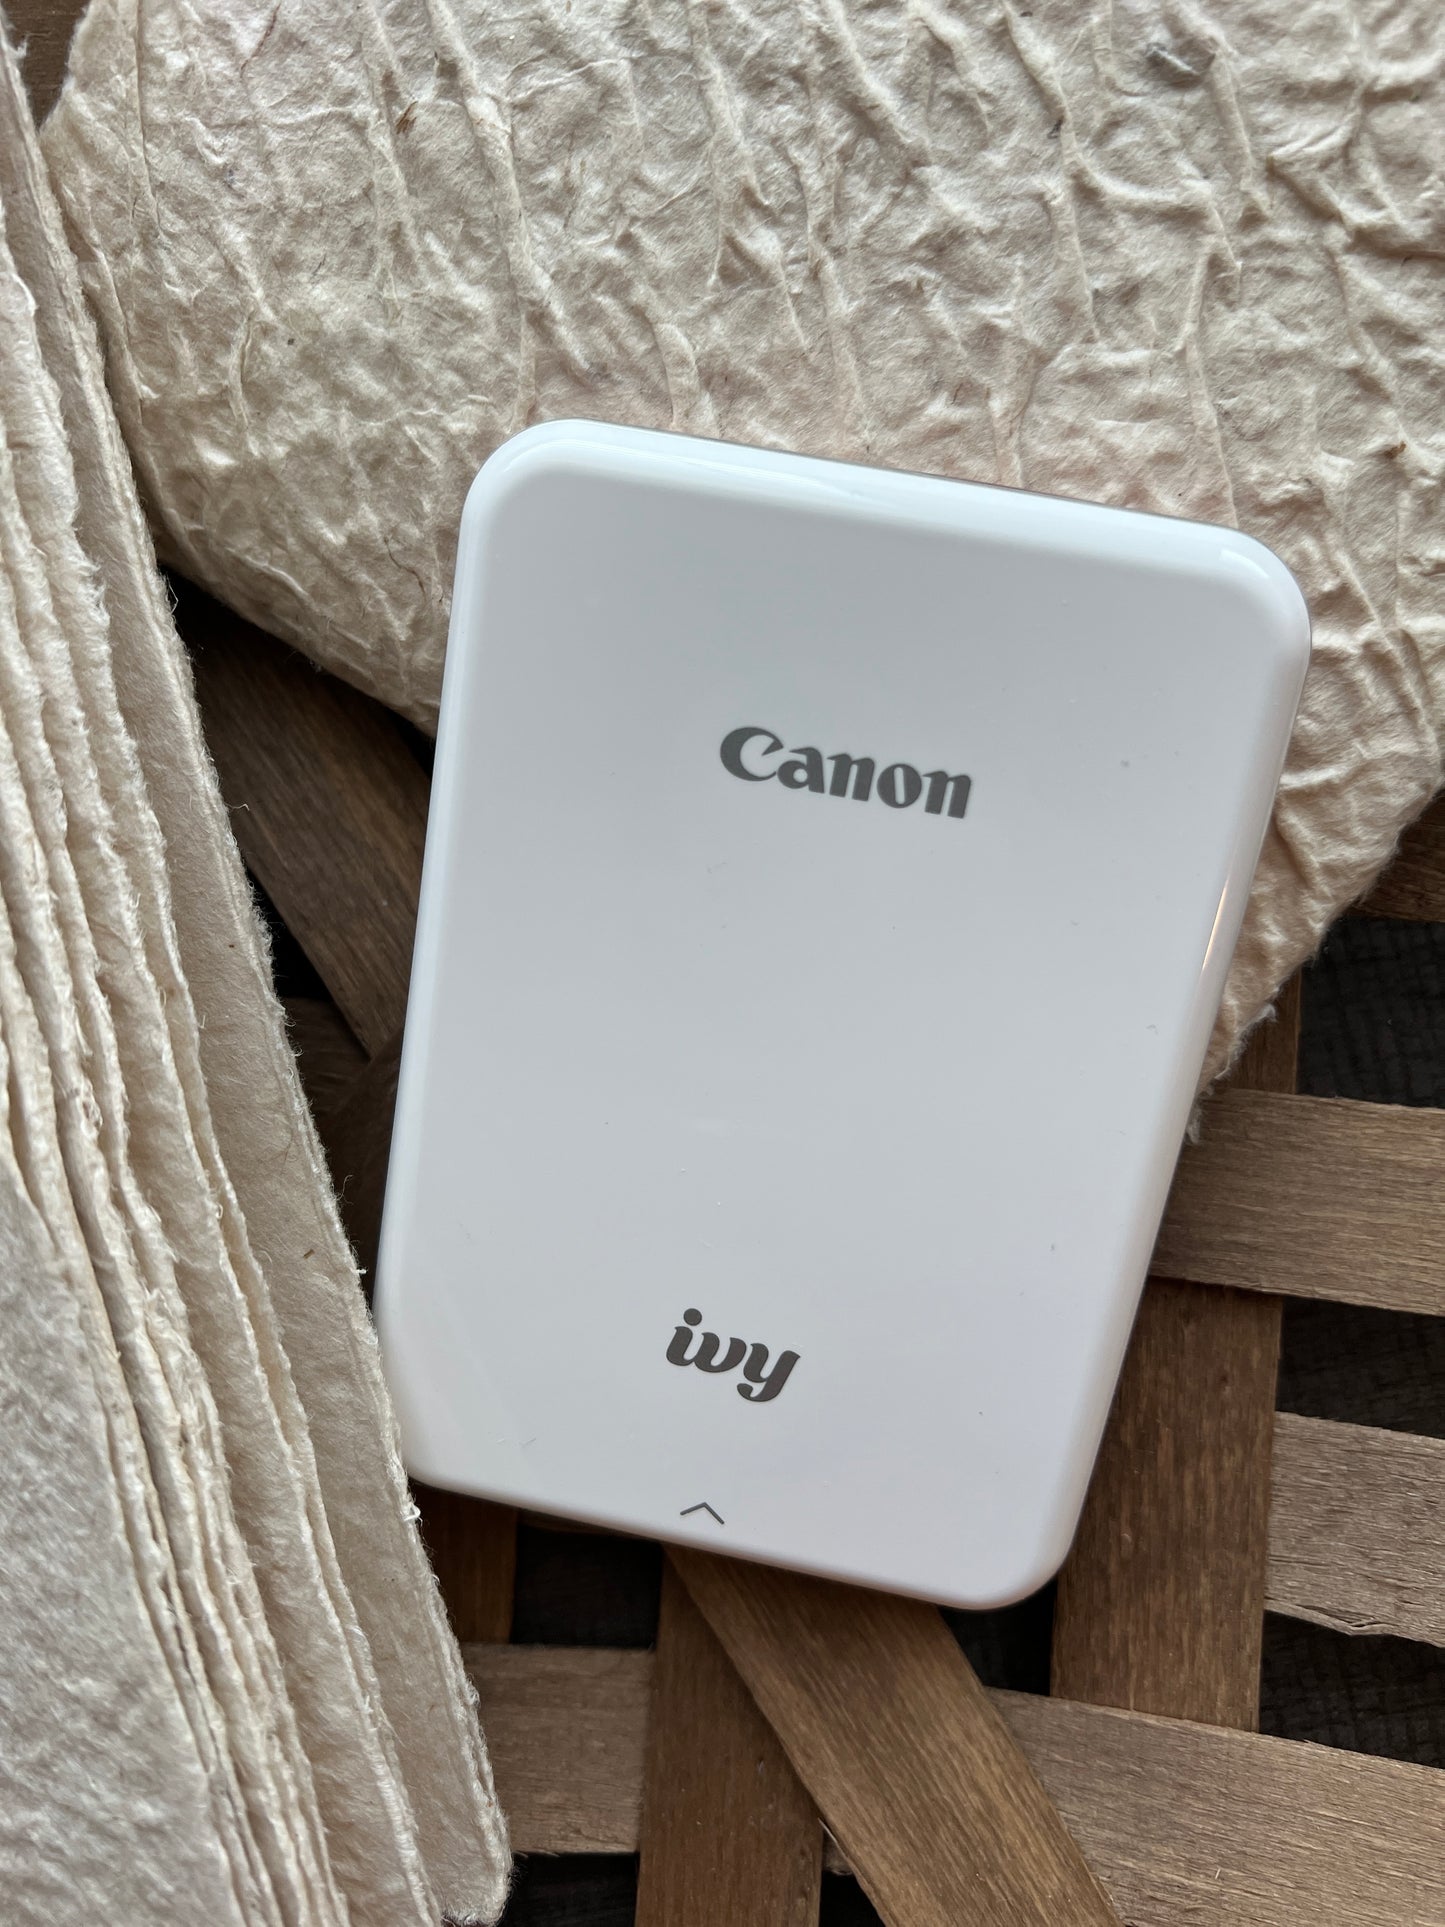 Preowned: Canon Ivy Mini Photo Printer